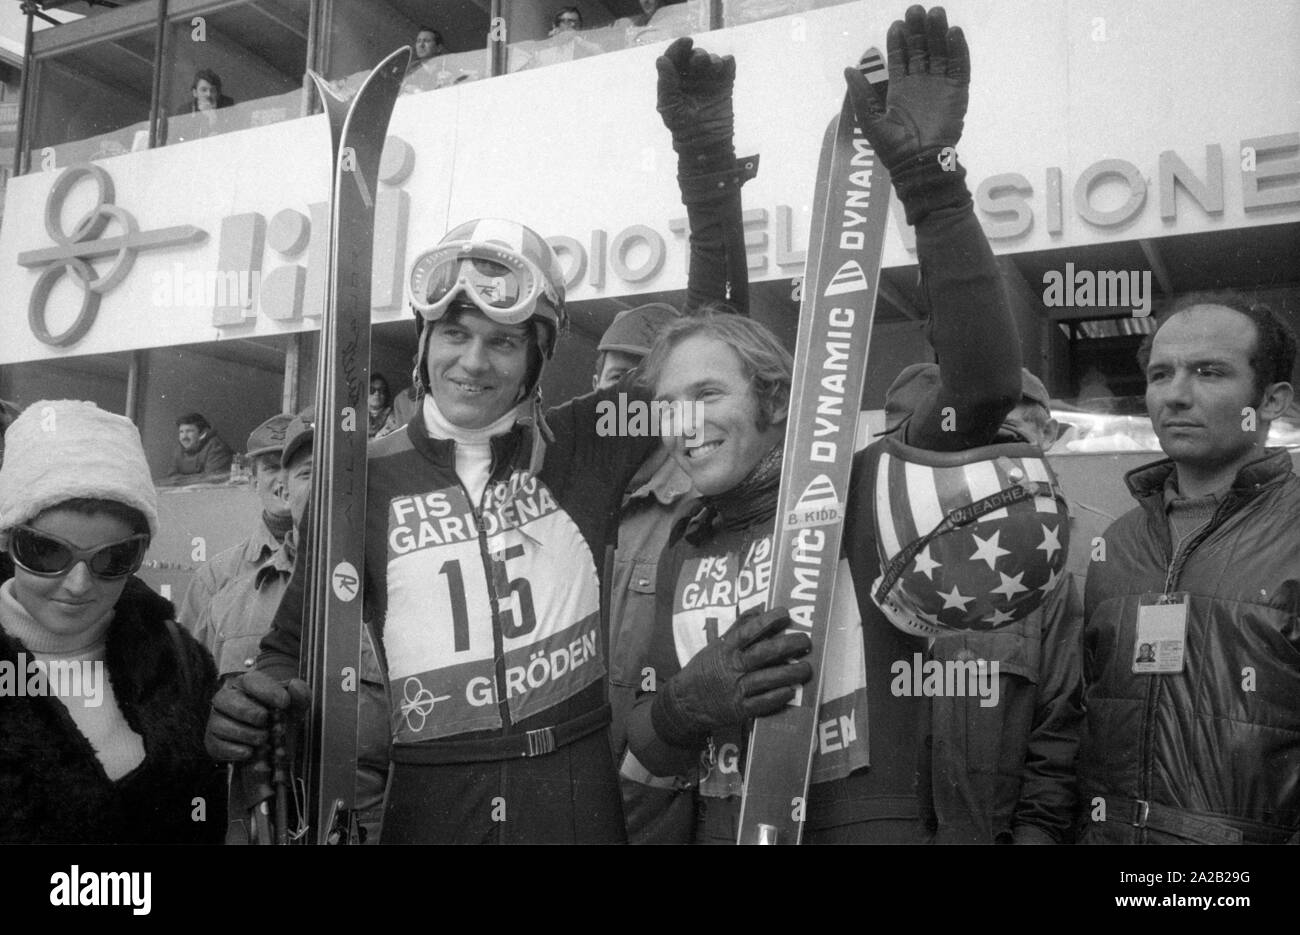 Die Alpine Ski-WM in Val Gardena zwischen 7.2.1970 und 15.2.1970, und er hatte die nur Wm so weit, deren Ergebnisse die Alpine Ski WM enthalten. Foto von Athleten aus der Schweiz Bernhard Russi (links) und die Amerikanische Billy Kidd (rechts), vermutlich kurz nach der Abfahrt. Stockfoto